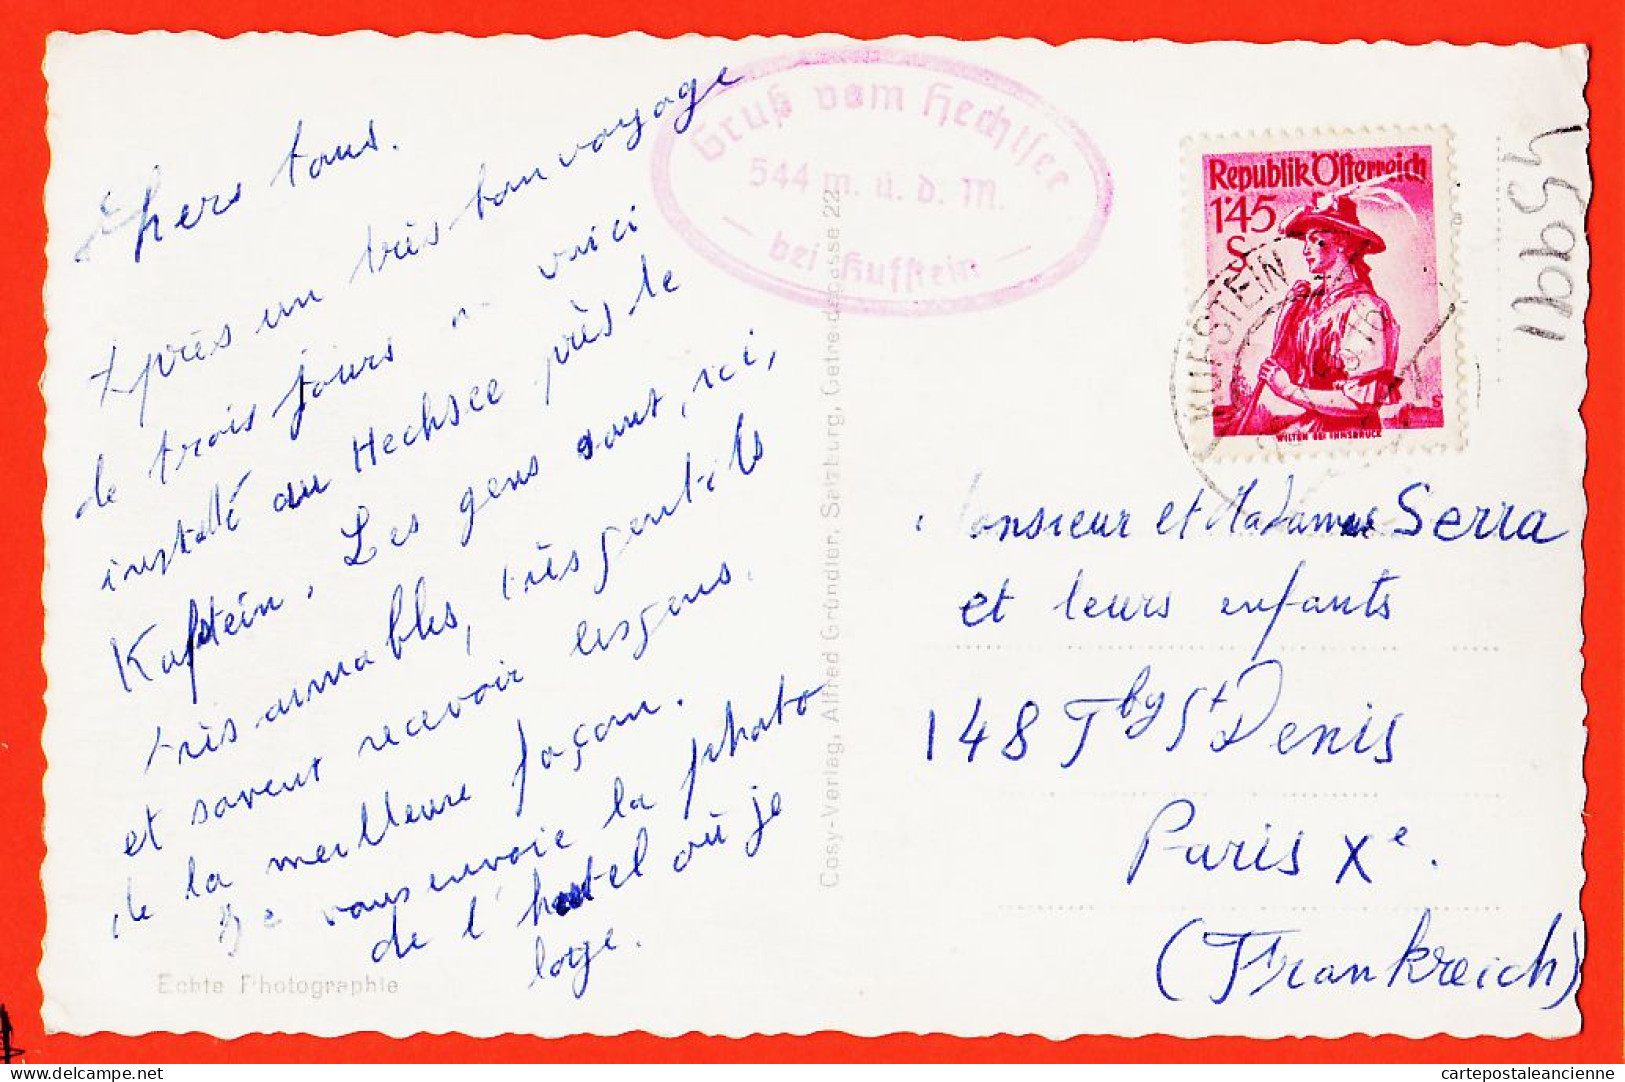 23673 / KUFSTEIN Tirol Hotel HECHTSEE 1950s à SERRA Faubourg Saint-Denis Paris / Photo-Bromure ALFRED GRUNDER - Kufstein